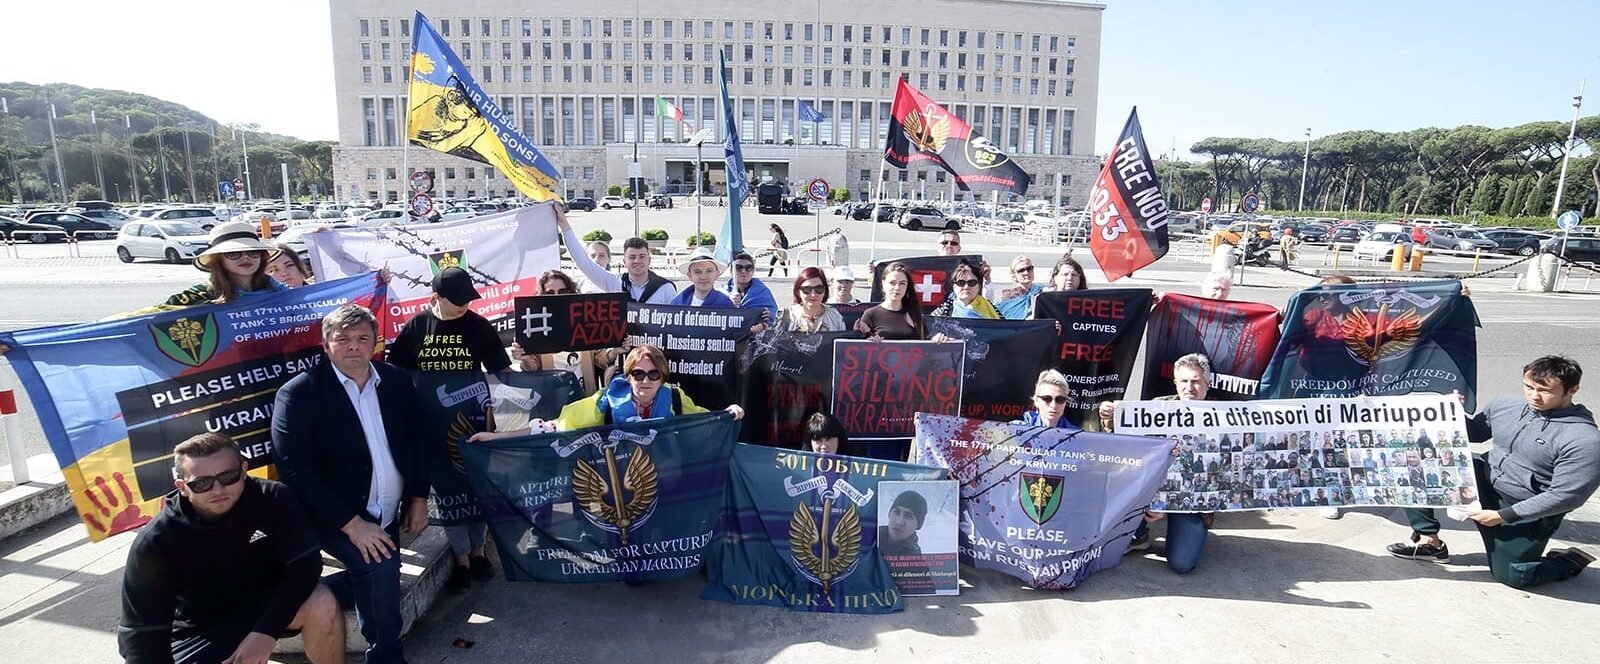 Gli ucraini in Italia chiedono alle autorità di aiutare a liberare i difensori di Mariupol